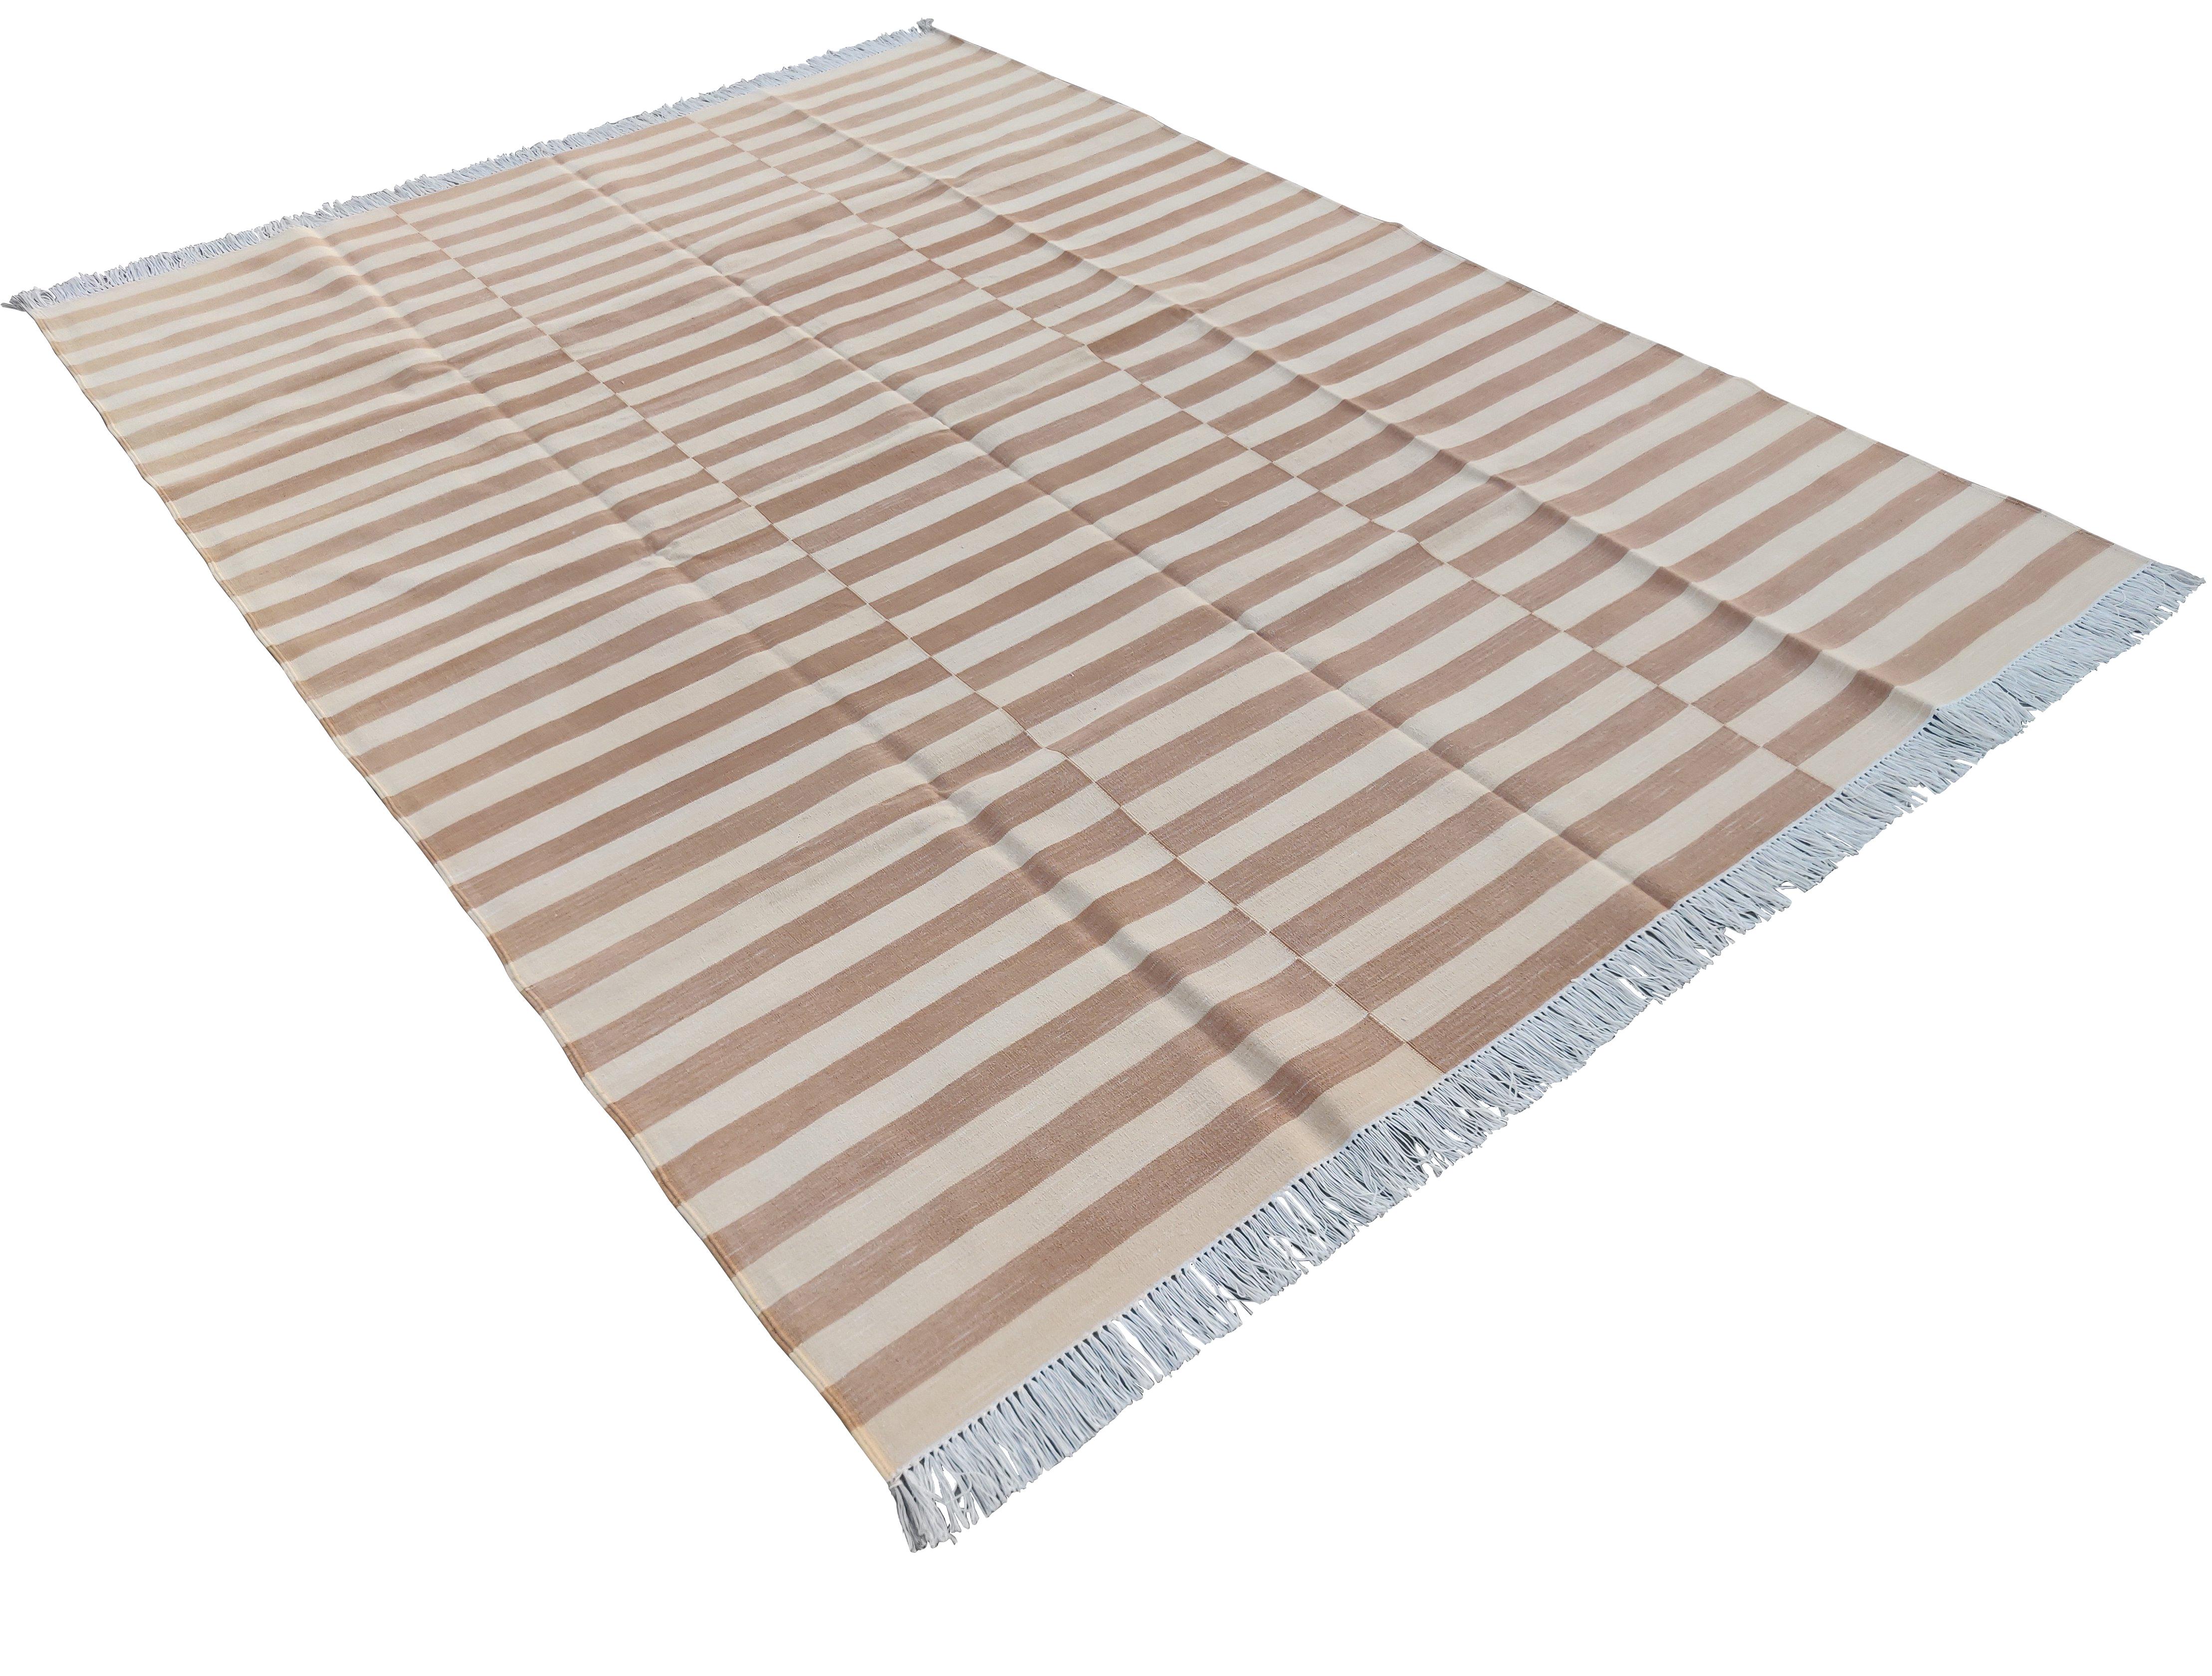 Baumwolle pflanzlich gefärbt Tan und Creme gestreift indischen Dhurrie Teppich-6'x9' 

Diese speziellen flachgewebten Dhurries werden aus 15-fachem Garn aus 100% Baumwolle handgewebt. Aufgrund der speziellen Fertigungstechniken, die zur Herstellung